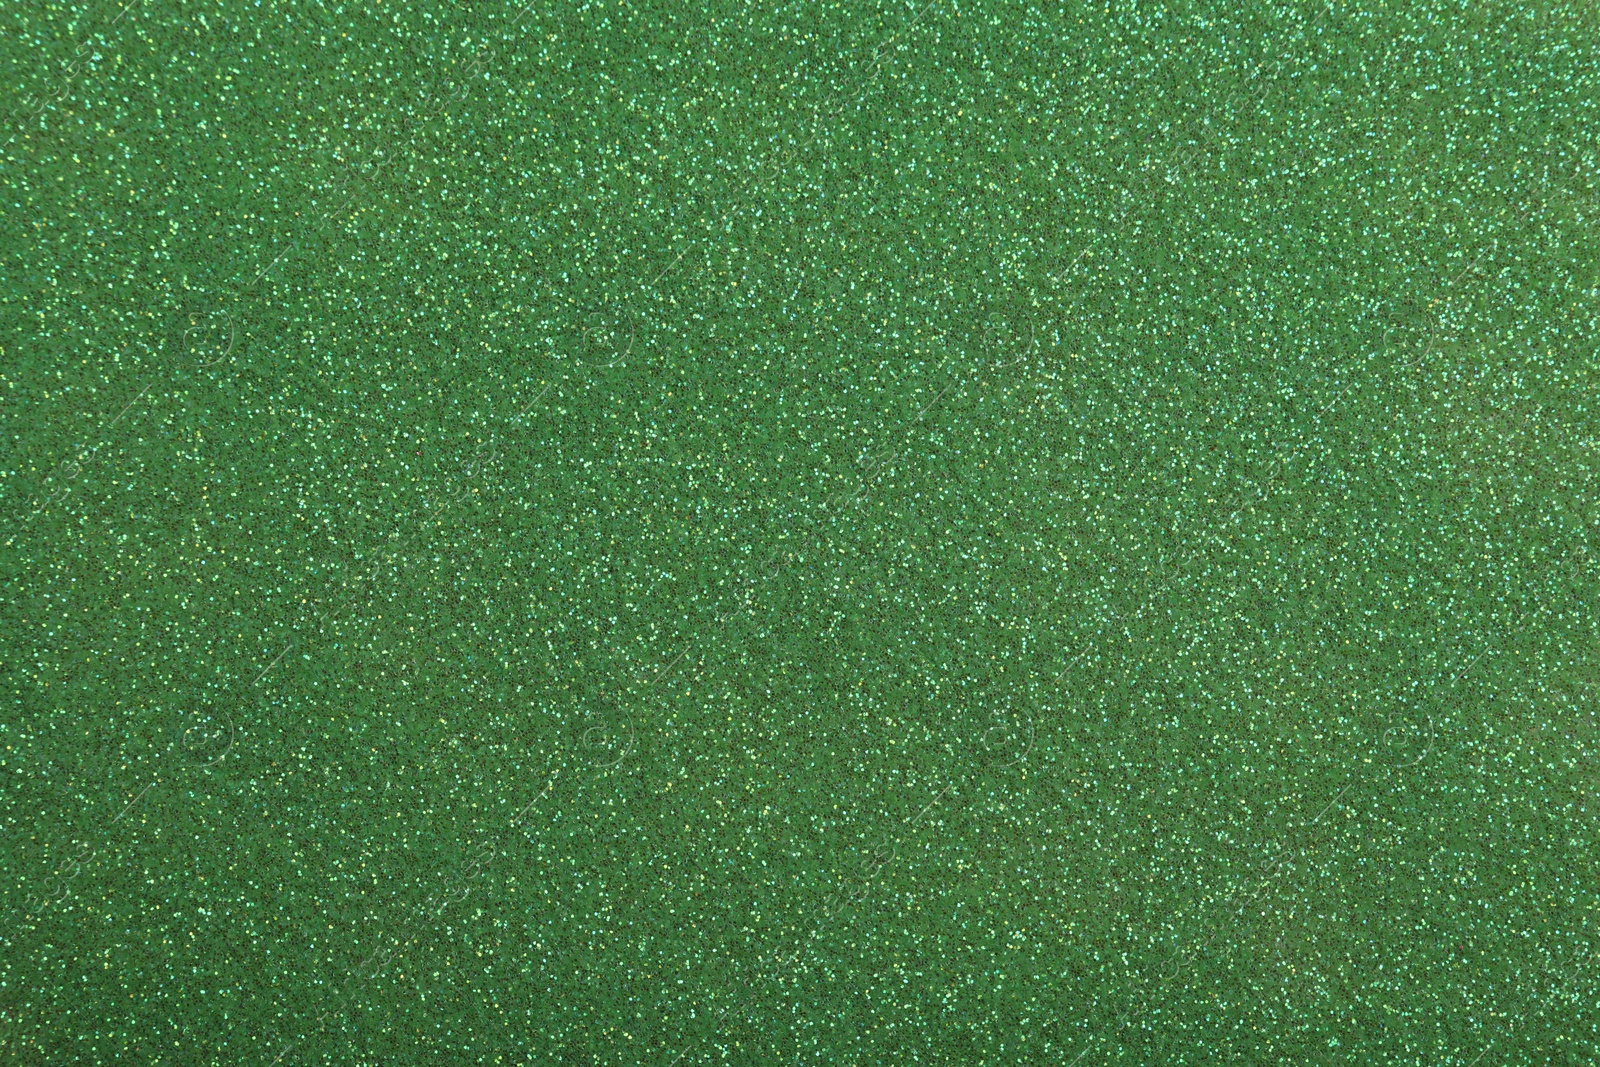 Photo of Beautiful shiny green glitter as background, closeup